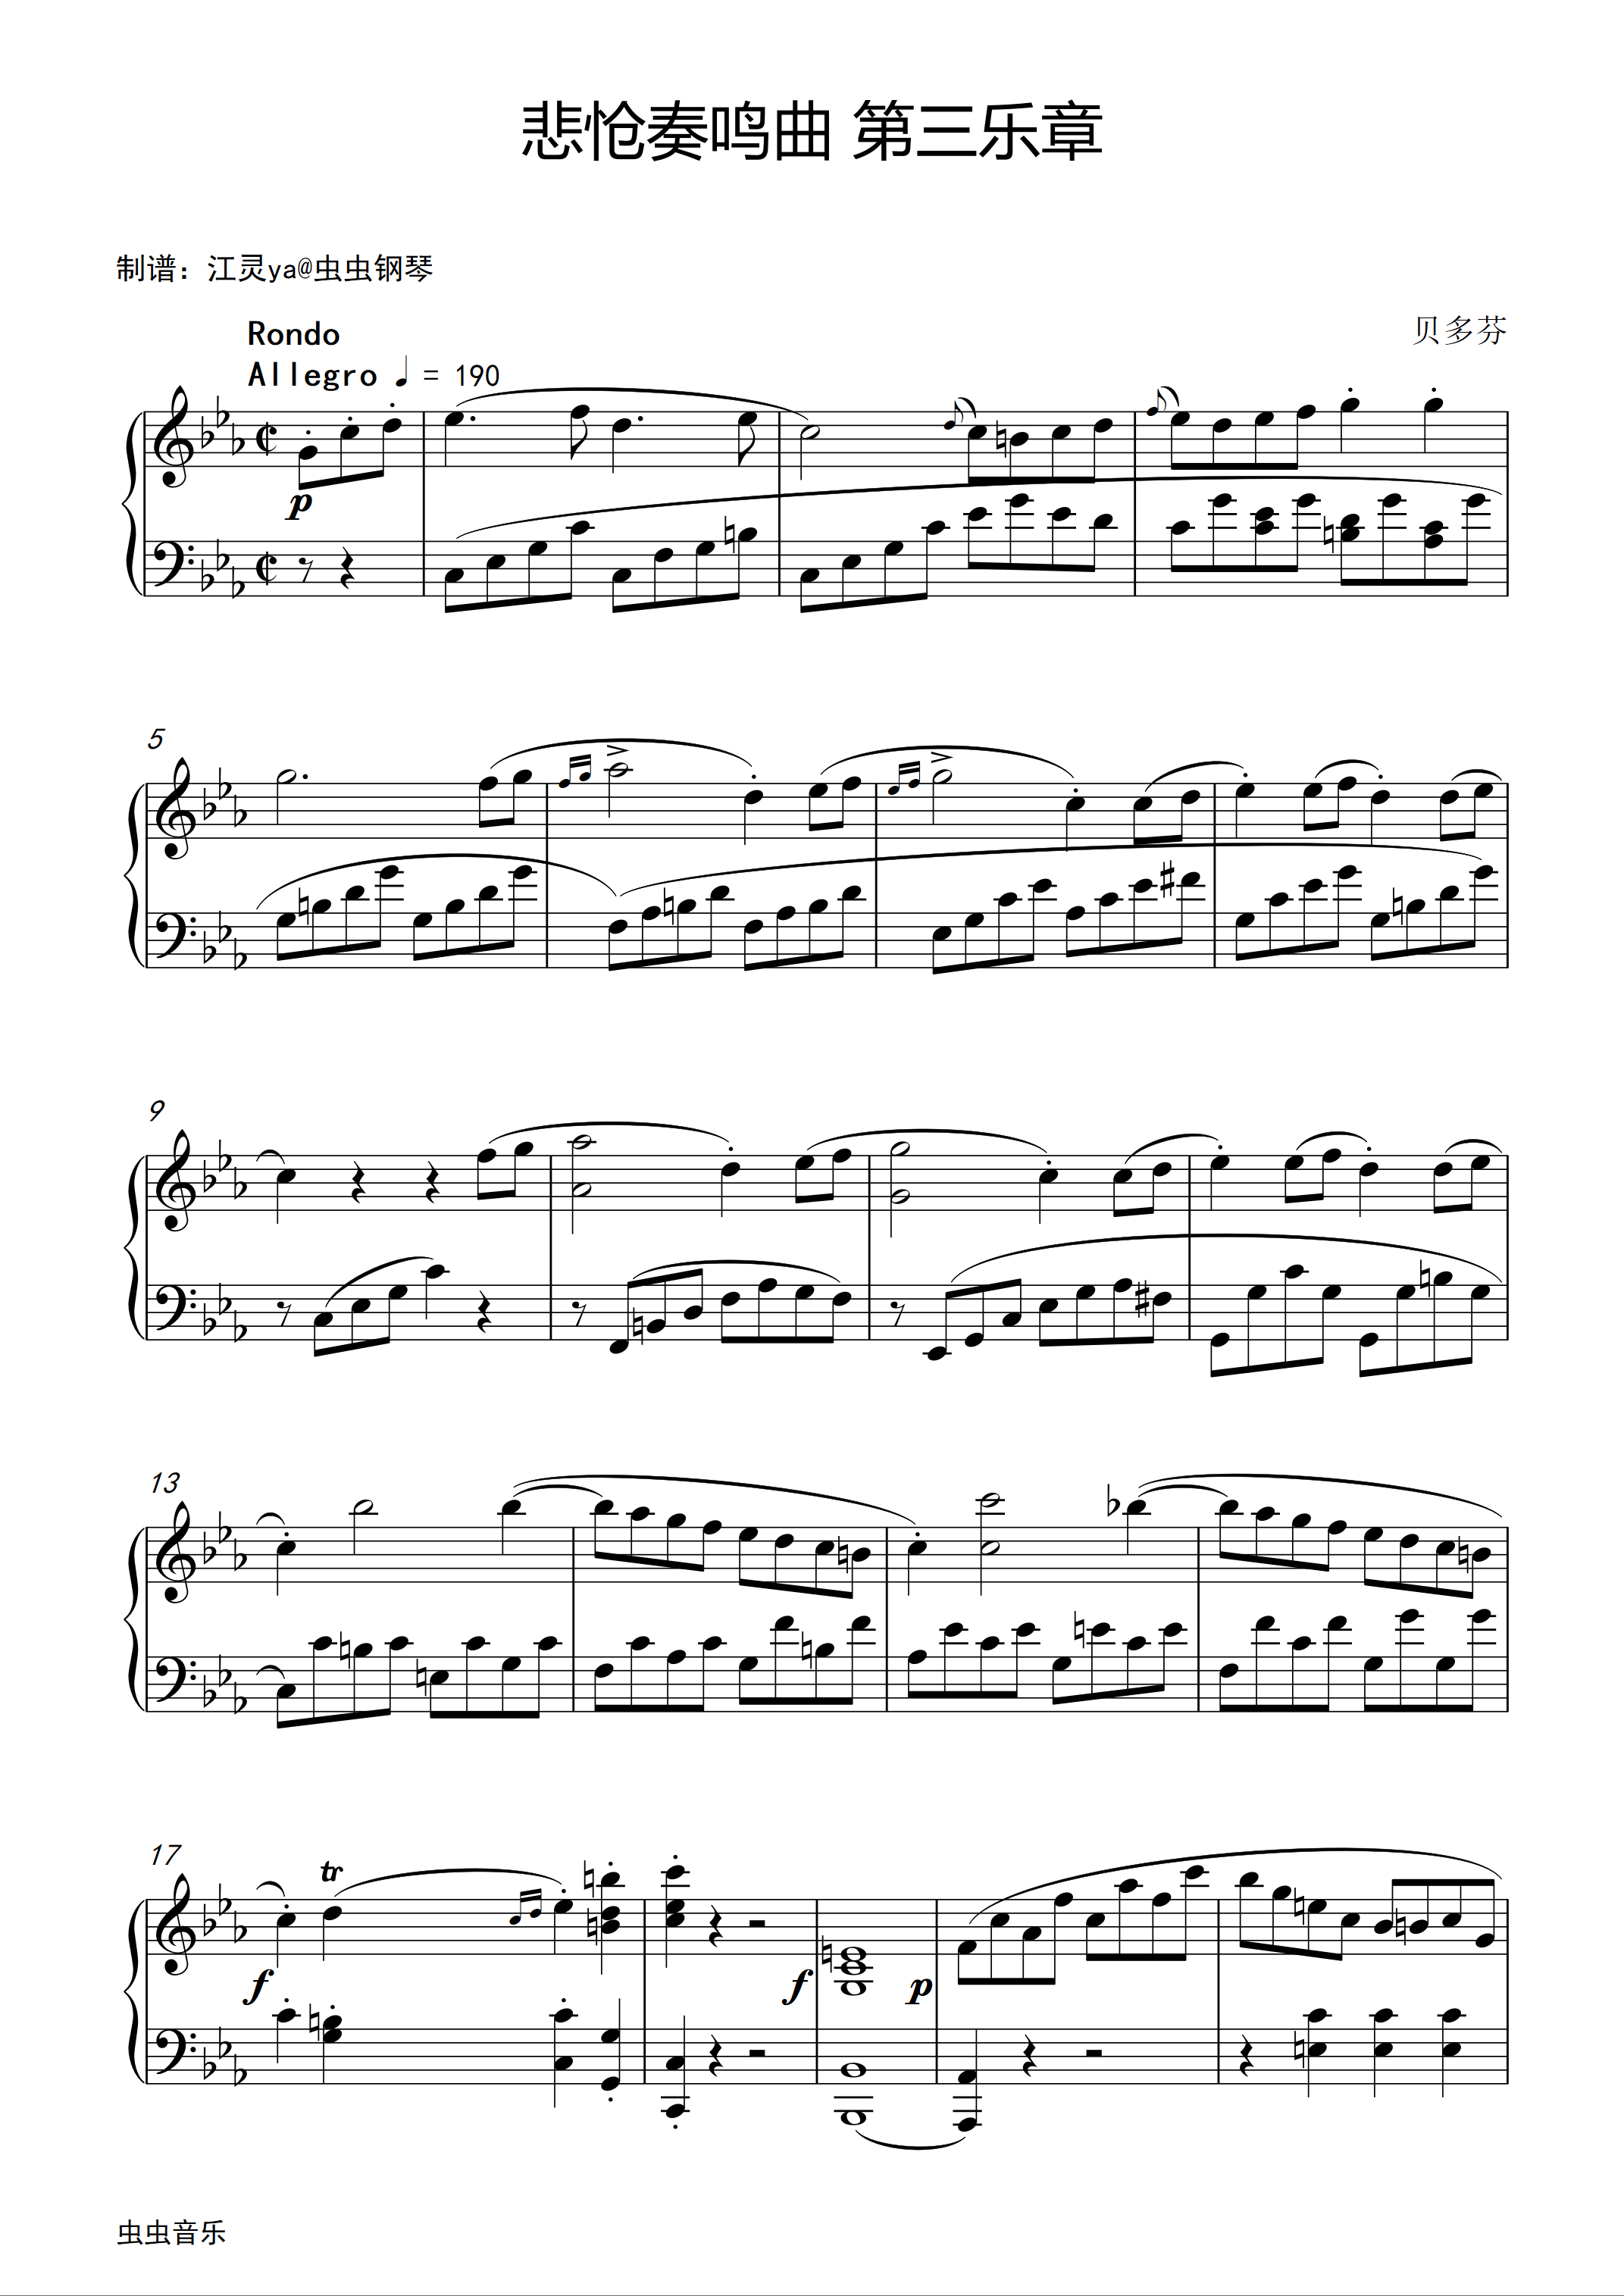 悲怆-貝多芬-c小調第八鋼琴奏鳴曲第三樂章五線譜預覽-EOP線上樂譜架